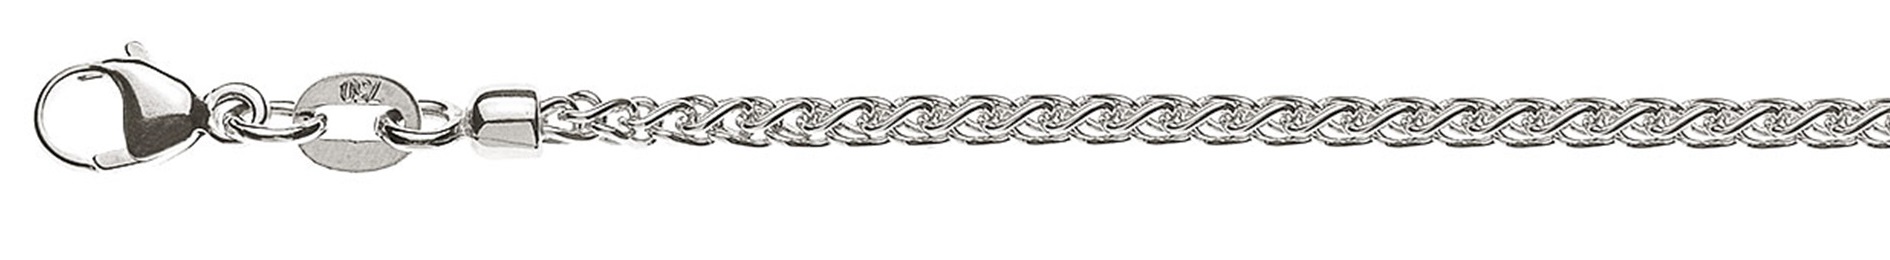 AURONOS Prestige Halskette Weissgold 18K Zopfkette 55cm 2.15mm